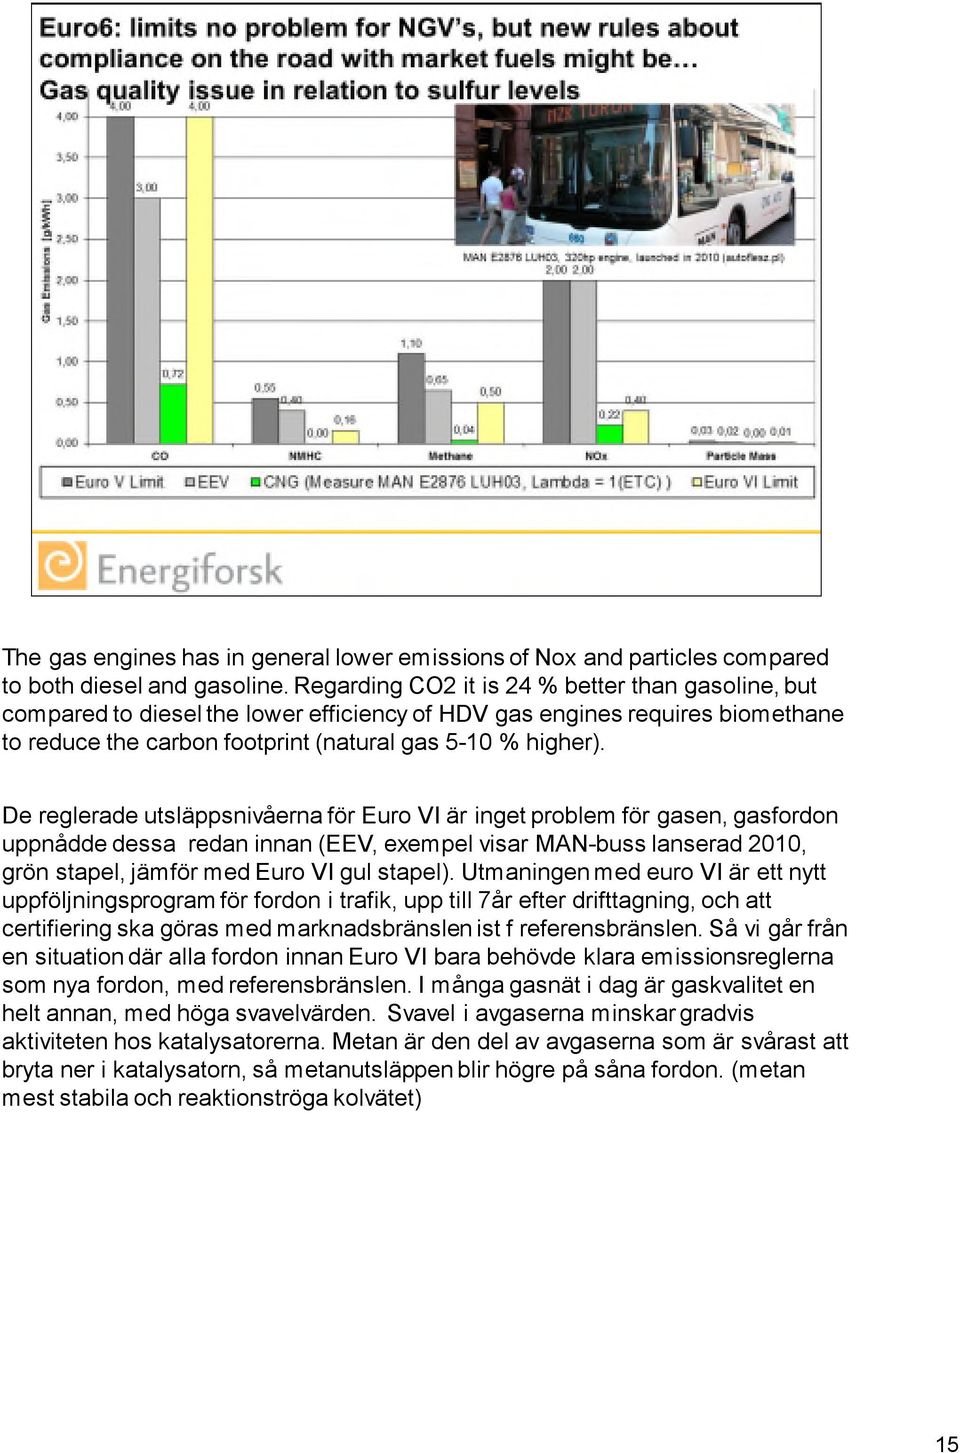 De reglerade utsläppsnivåerna för Euro VI är inget problem för gasen, gasfordon uppnådde dessa redan innan (EEV, exempel visar MAN-buss lanserad 2010, grön stapel, jämför med Euro VI gul stapel).